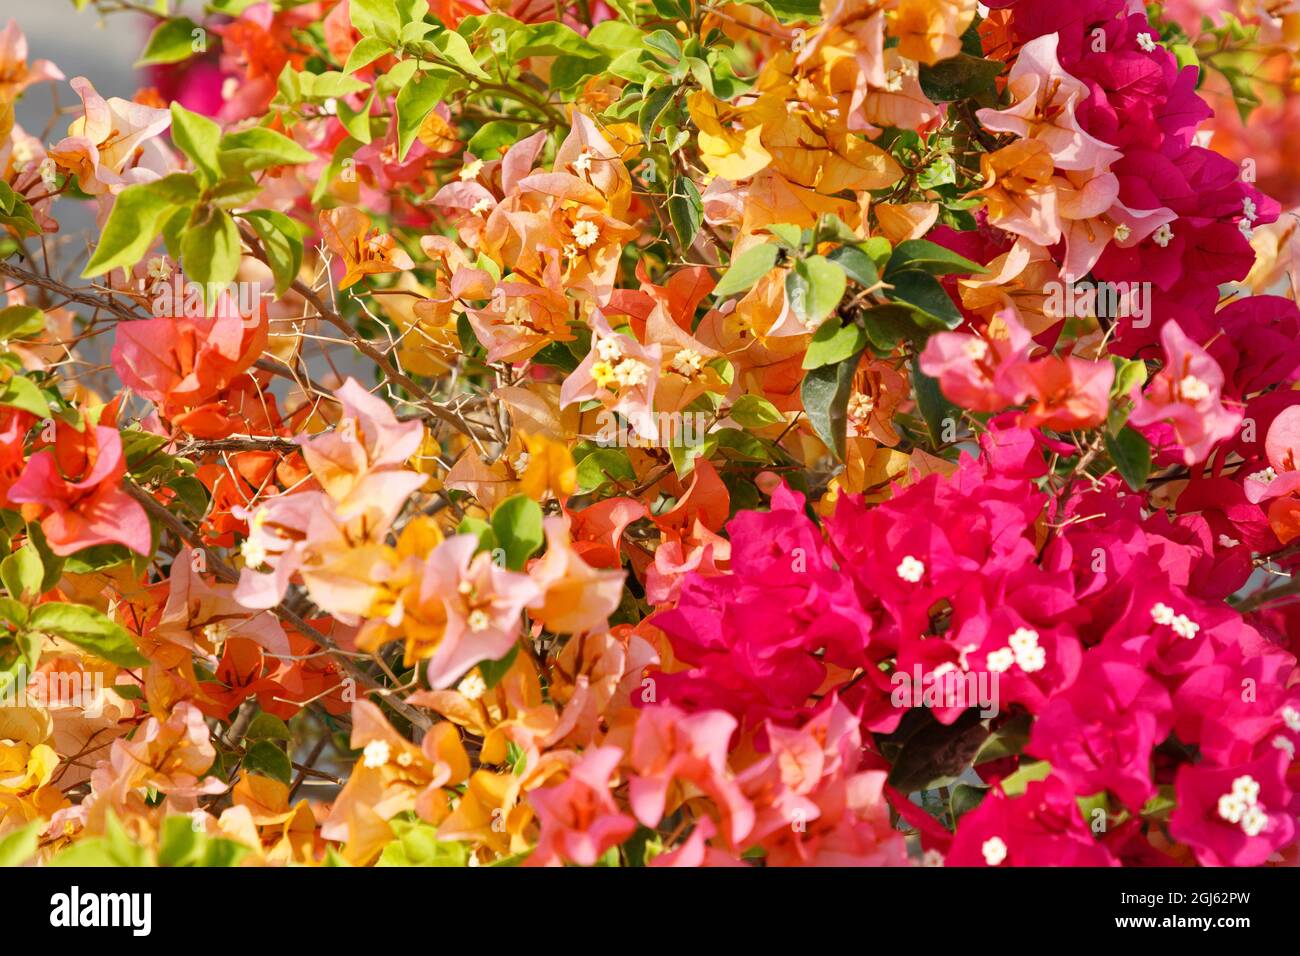 Stato del Qatar, Doha. Bougainvillea glabra Choisy, Gouhanamiya, paperflower. Colore fucsia chiaro, rosa e arancione. Foto Stock